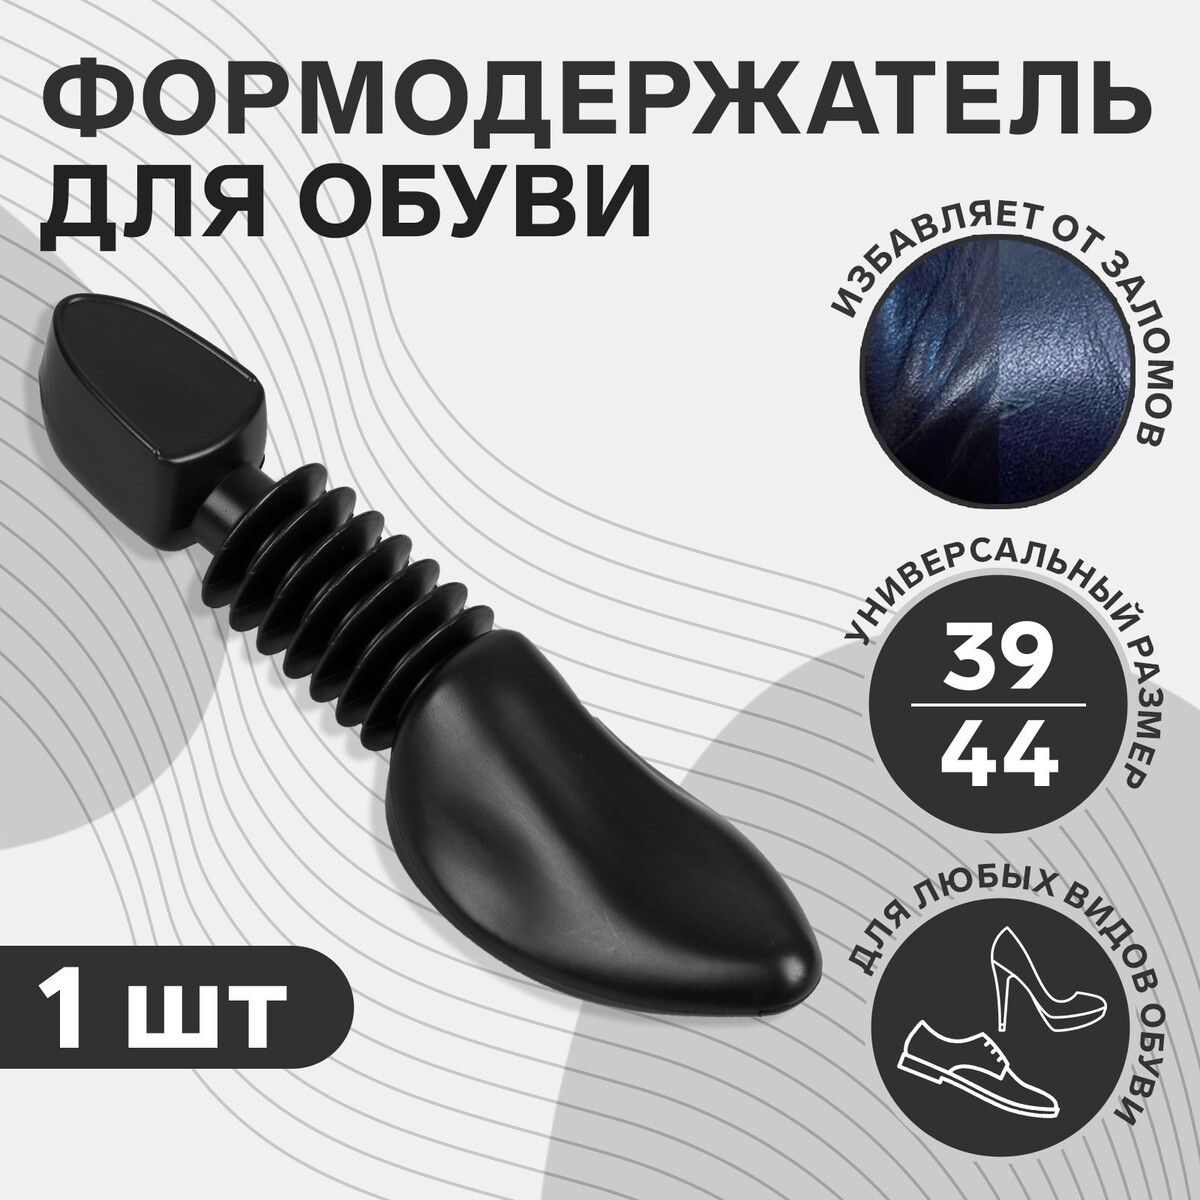 Колодка для сохранения формы обуви, 39-44р-р, цвет черный